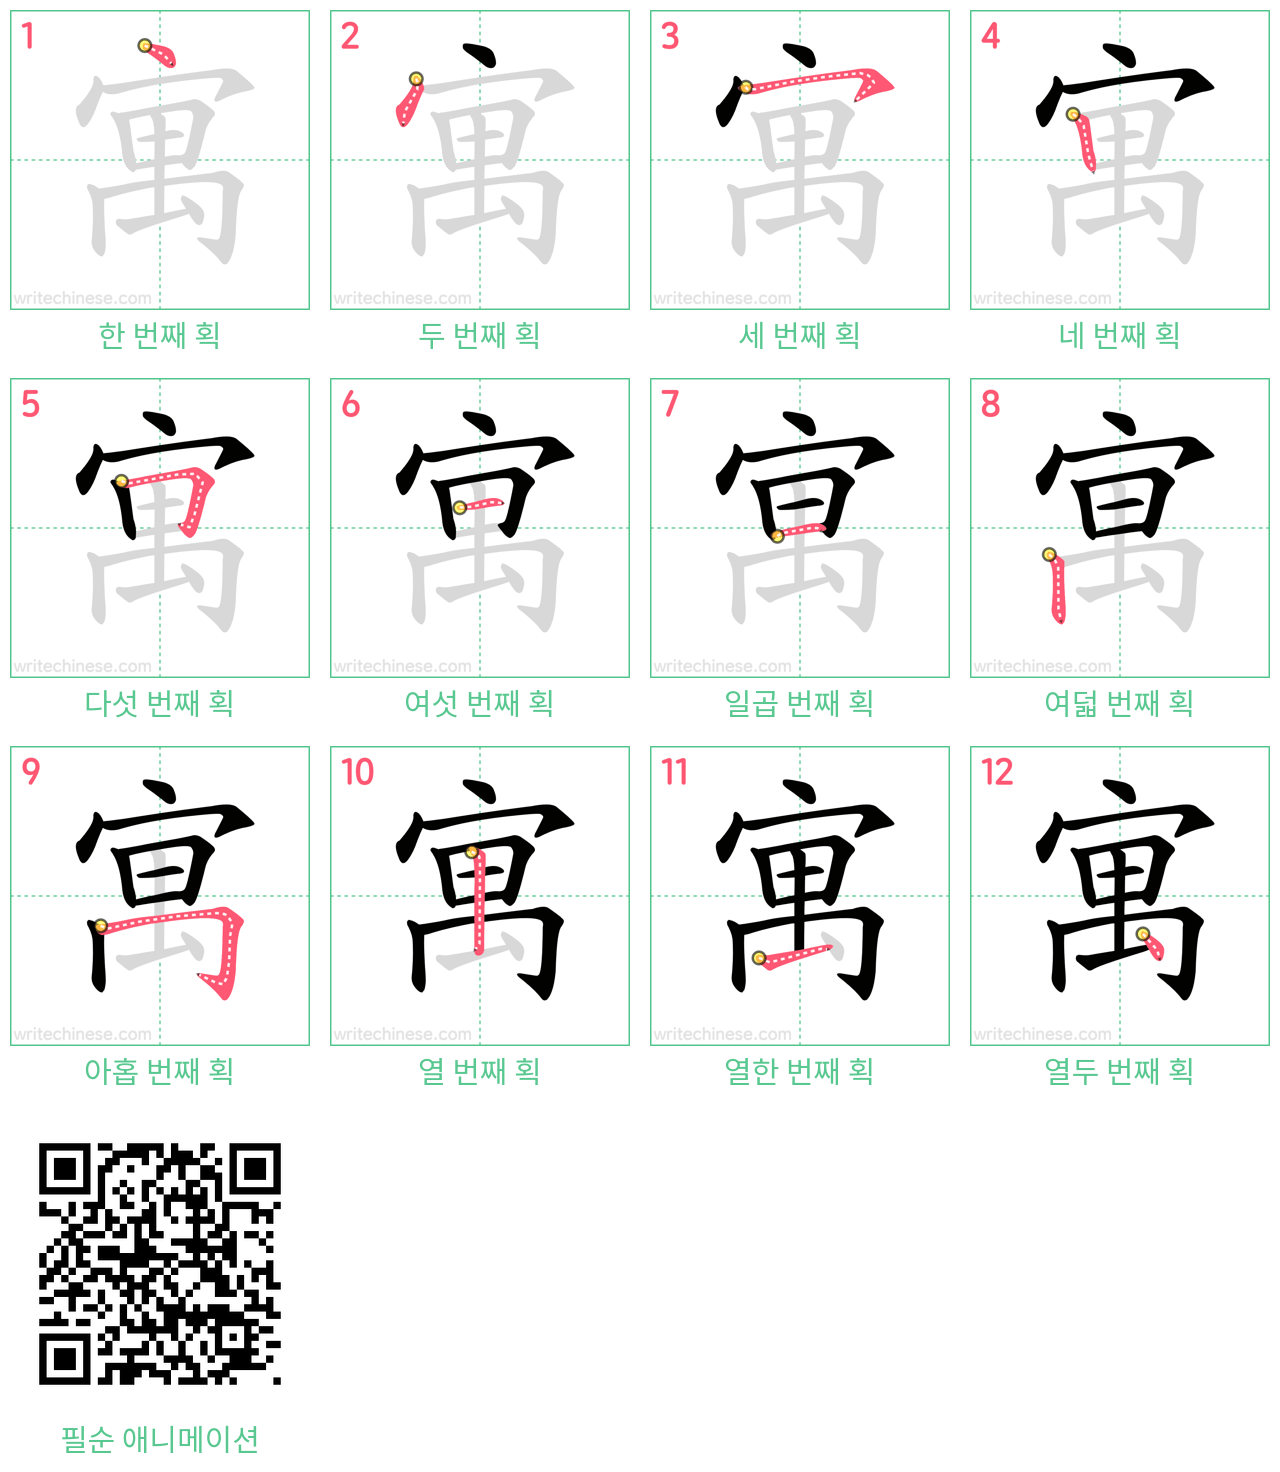 寓 step-by-step stroke order diagrams